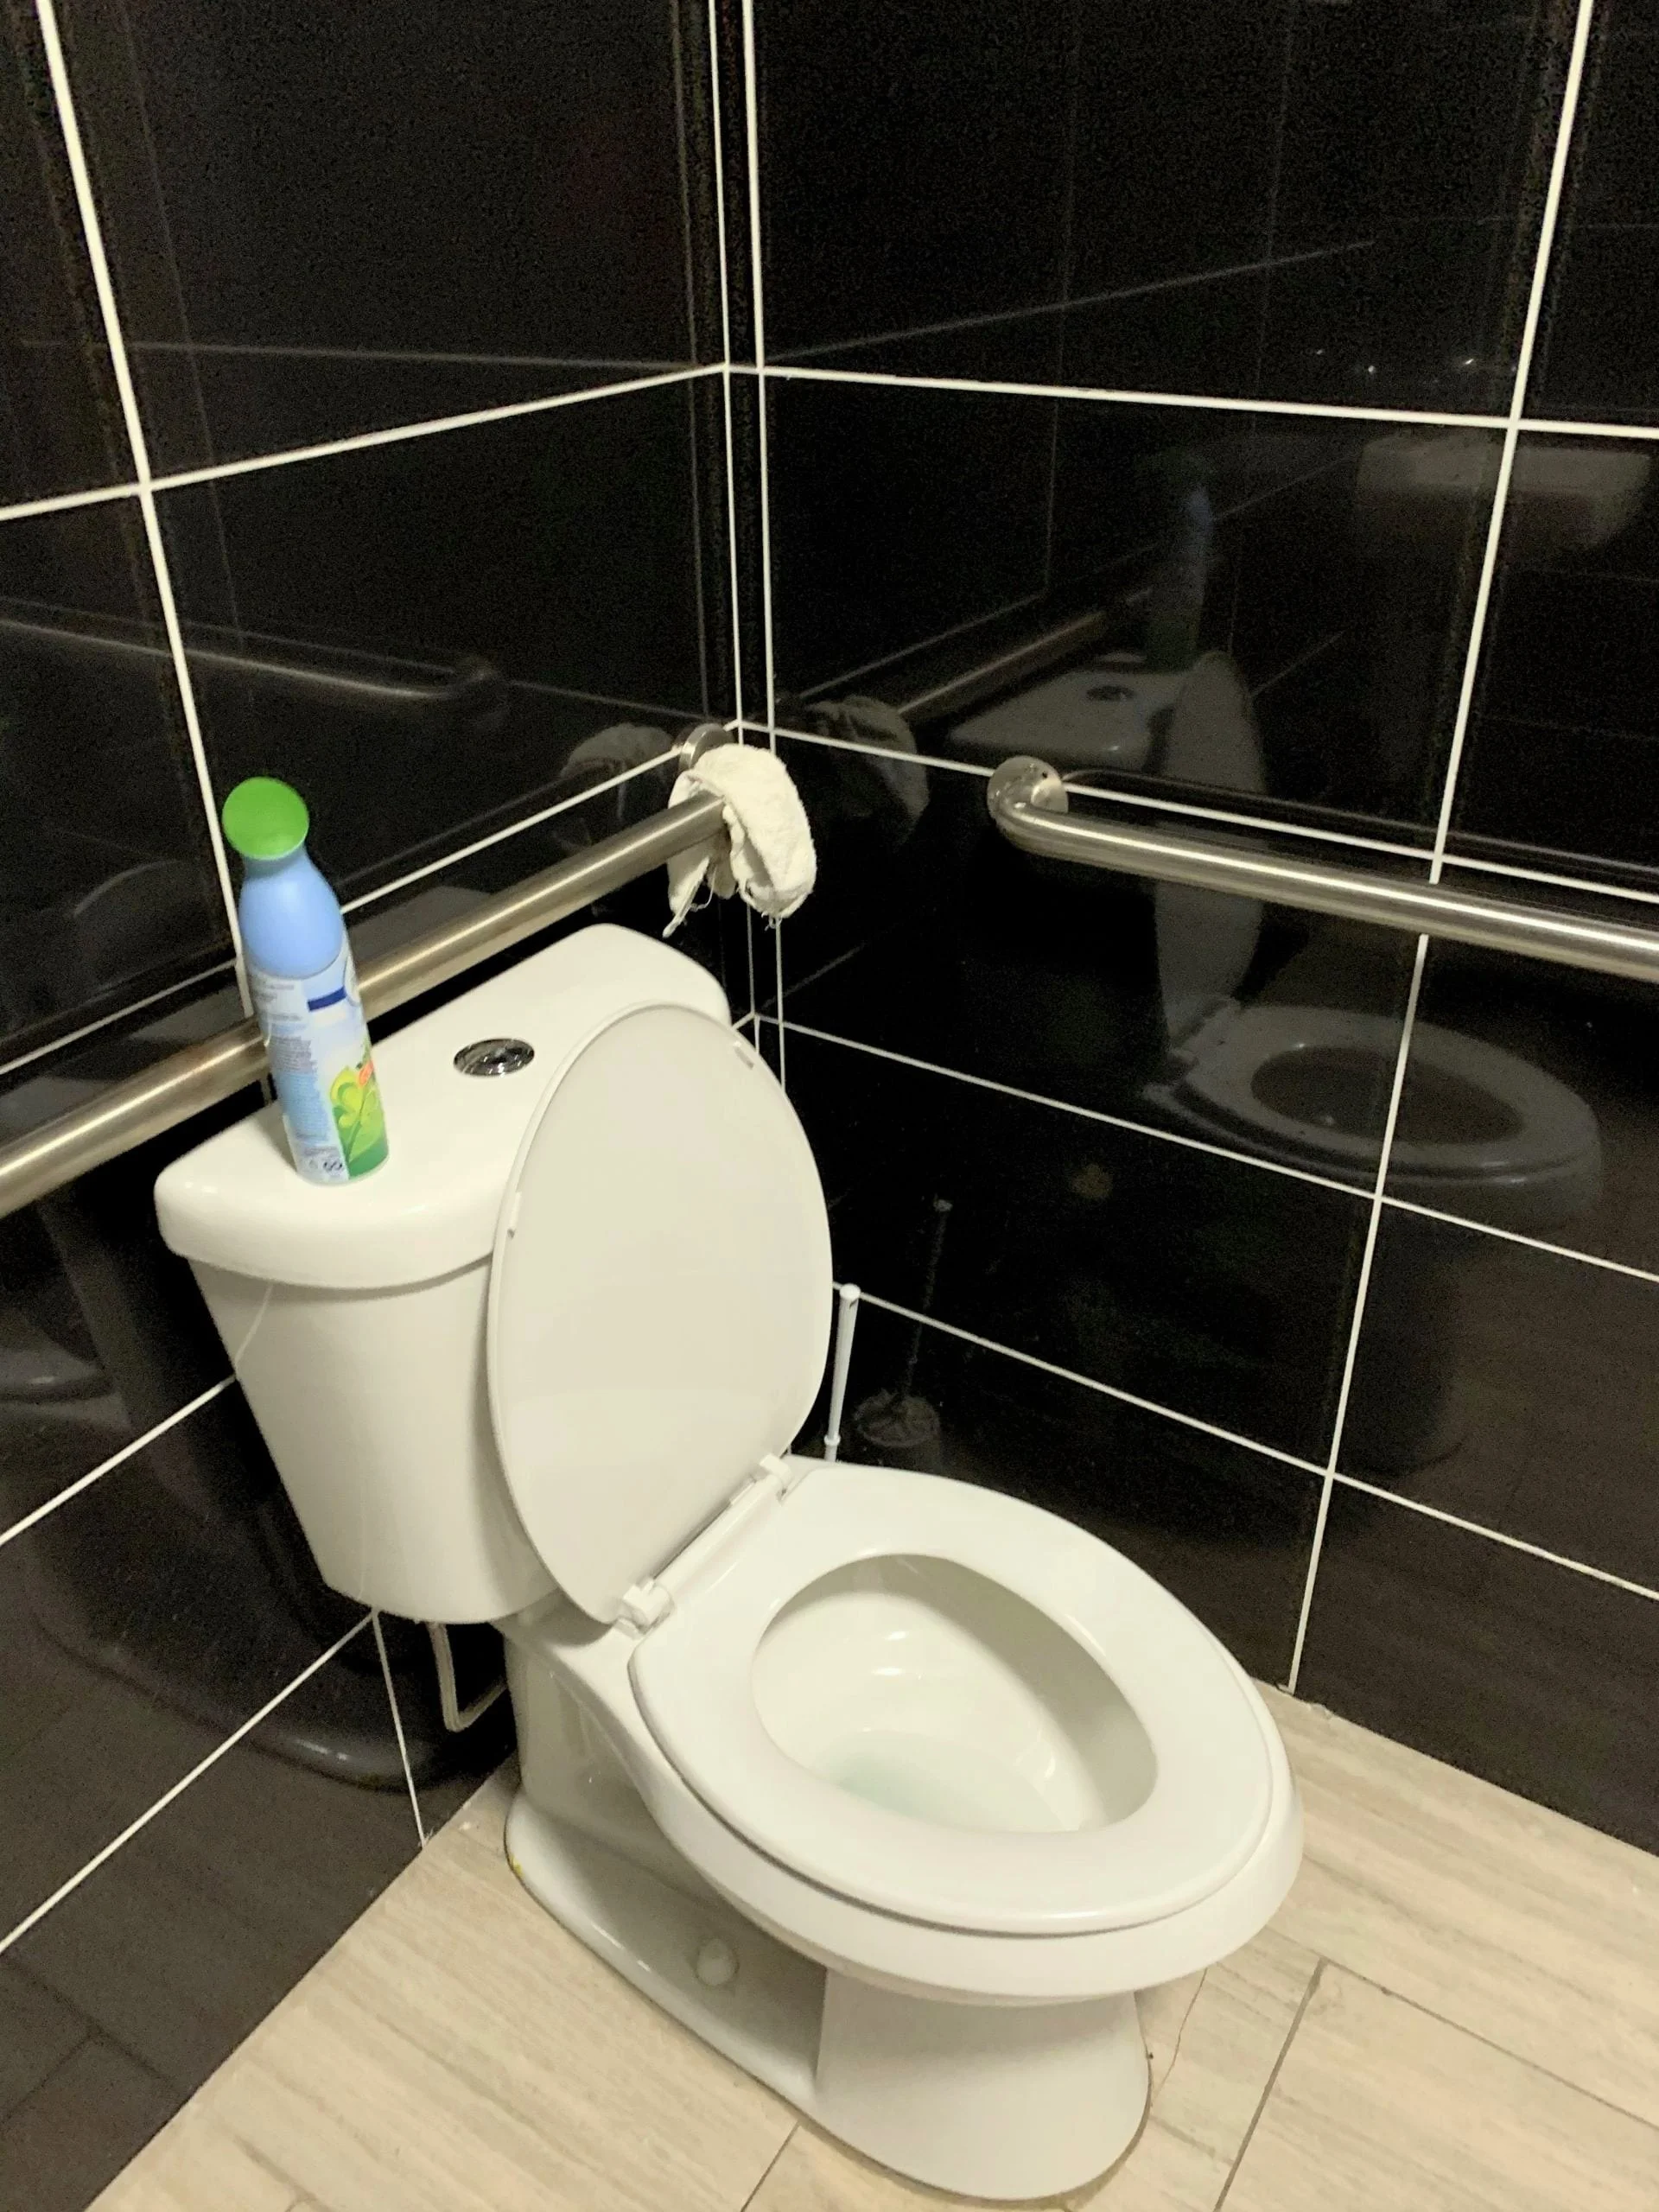 Trong restroom các cơ sở thương mại, phải có các thanh inox gắn vào tường tại khu vực bồn cầu, bồn rửa dành cho người khuyết tật. 